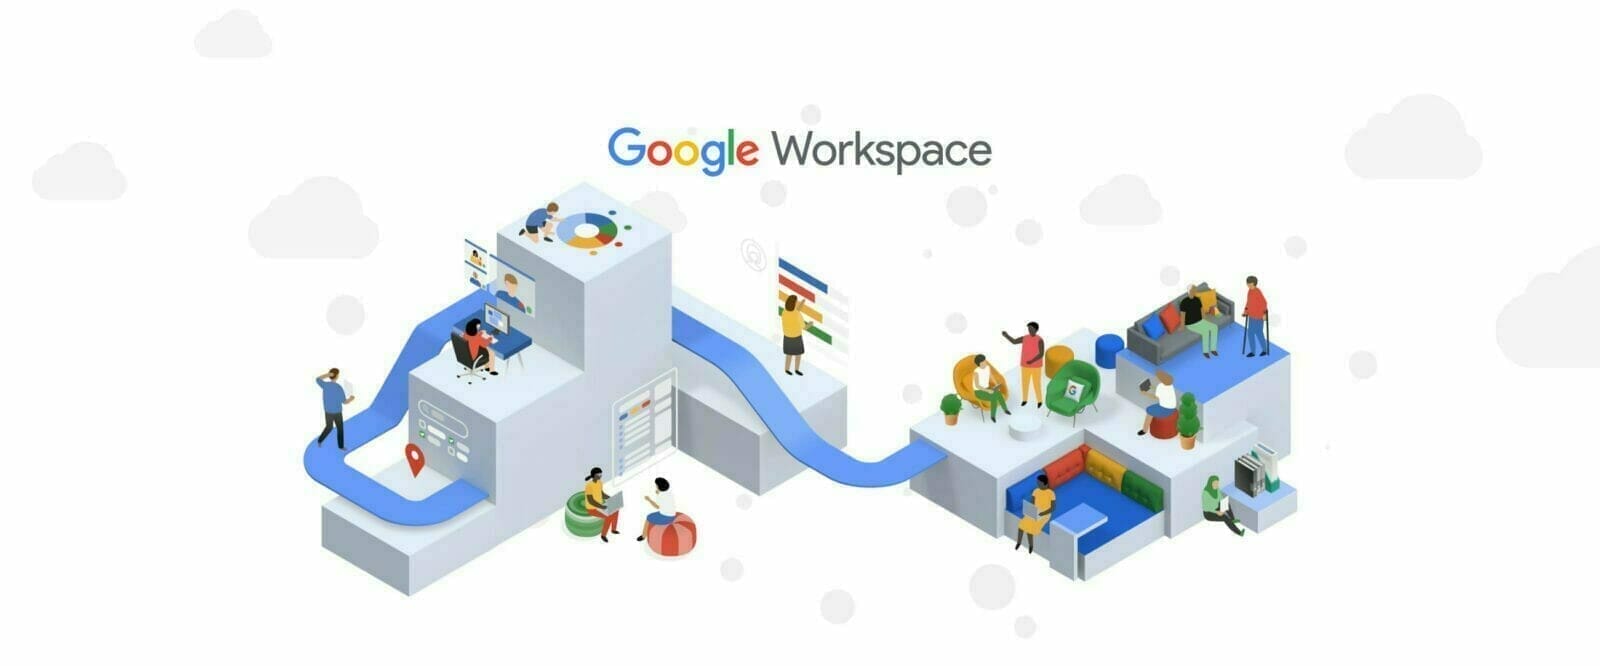 Google Workspace уБоц┤╗чФиуБзуВ│уГйуГЬуГмуГ╝уВ╖уГзуГ│уВТхдЙщЭй